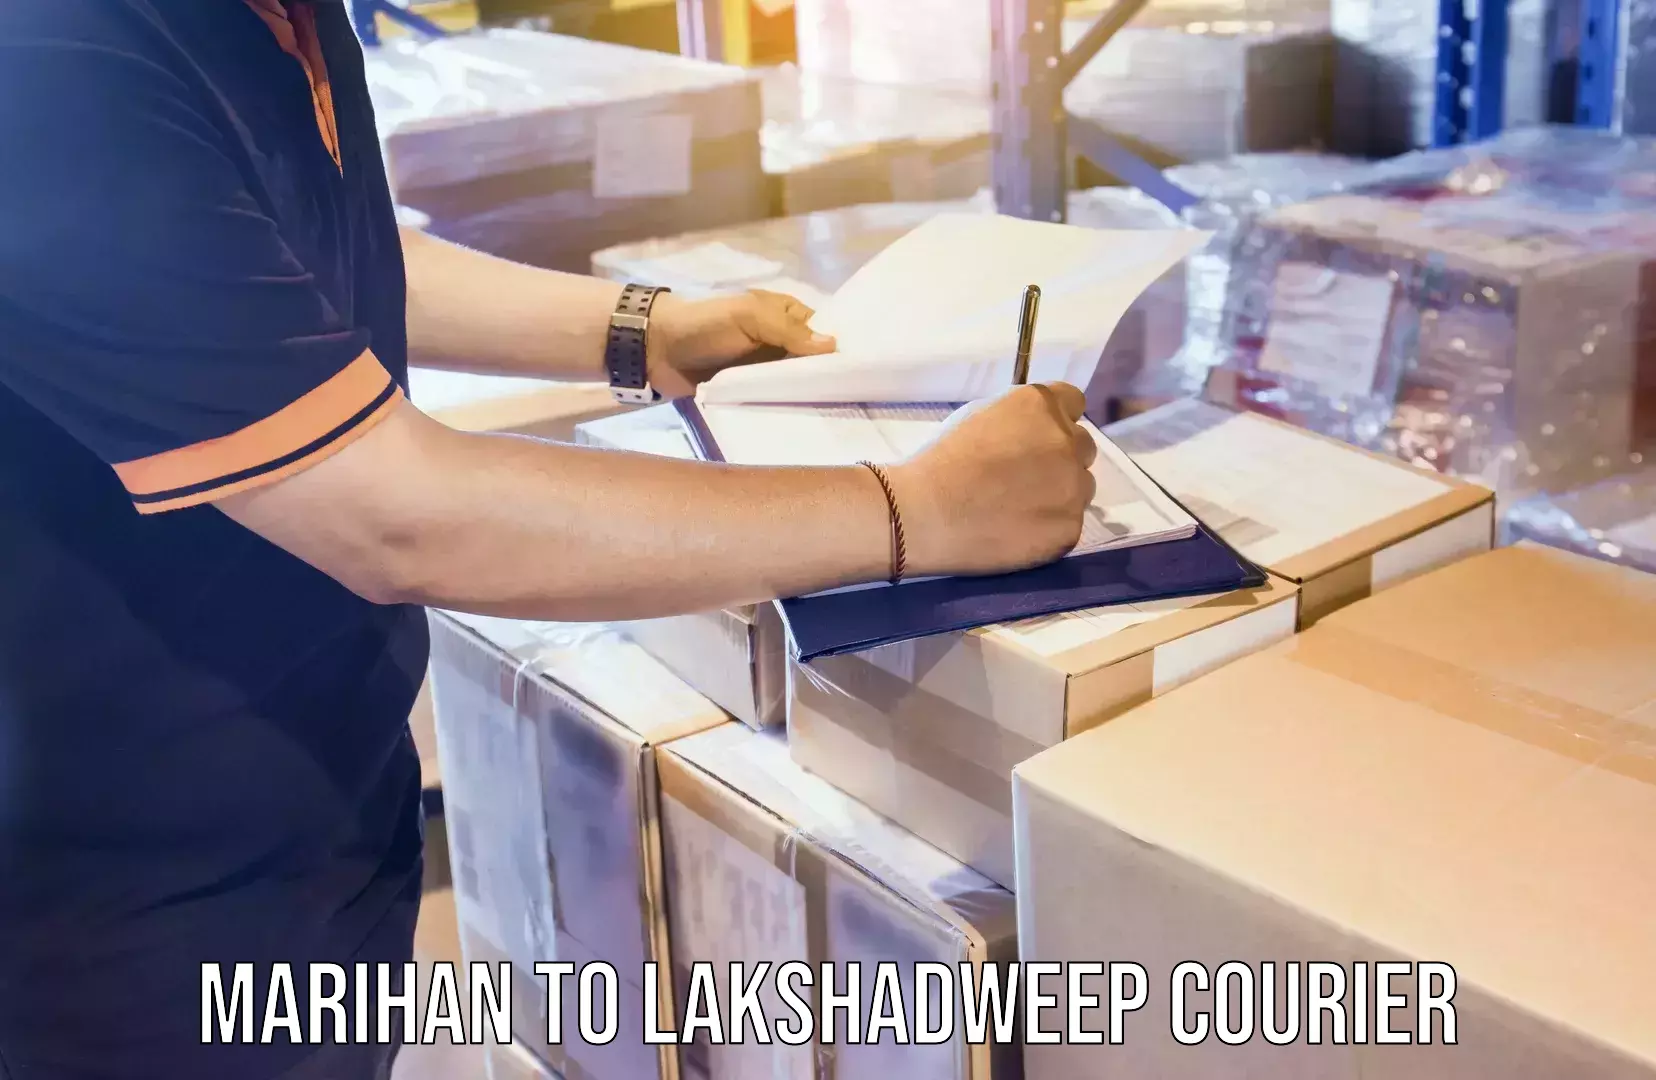 Moving and packing experts Marihan to Lakshadweep